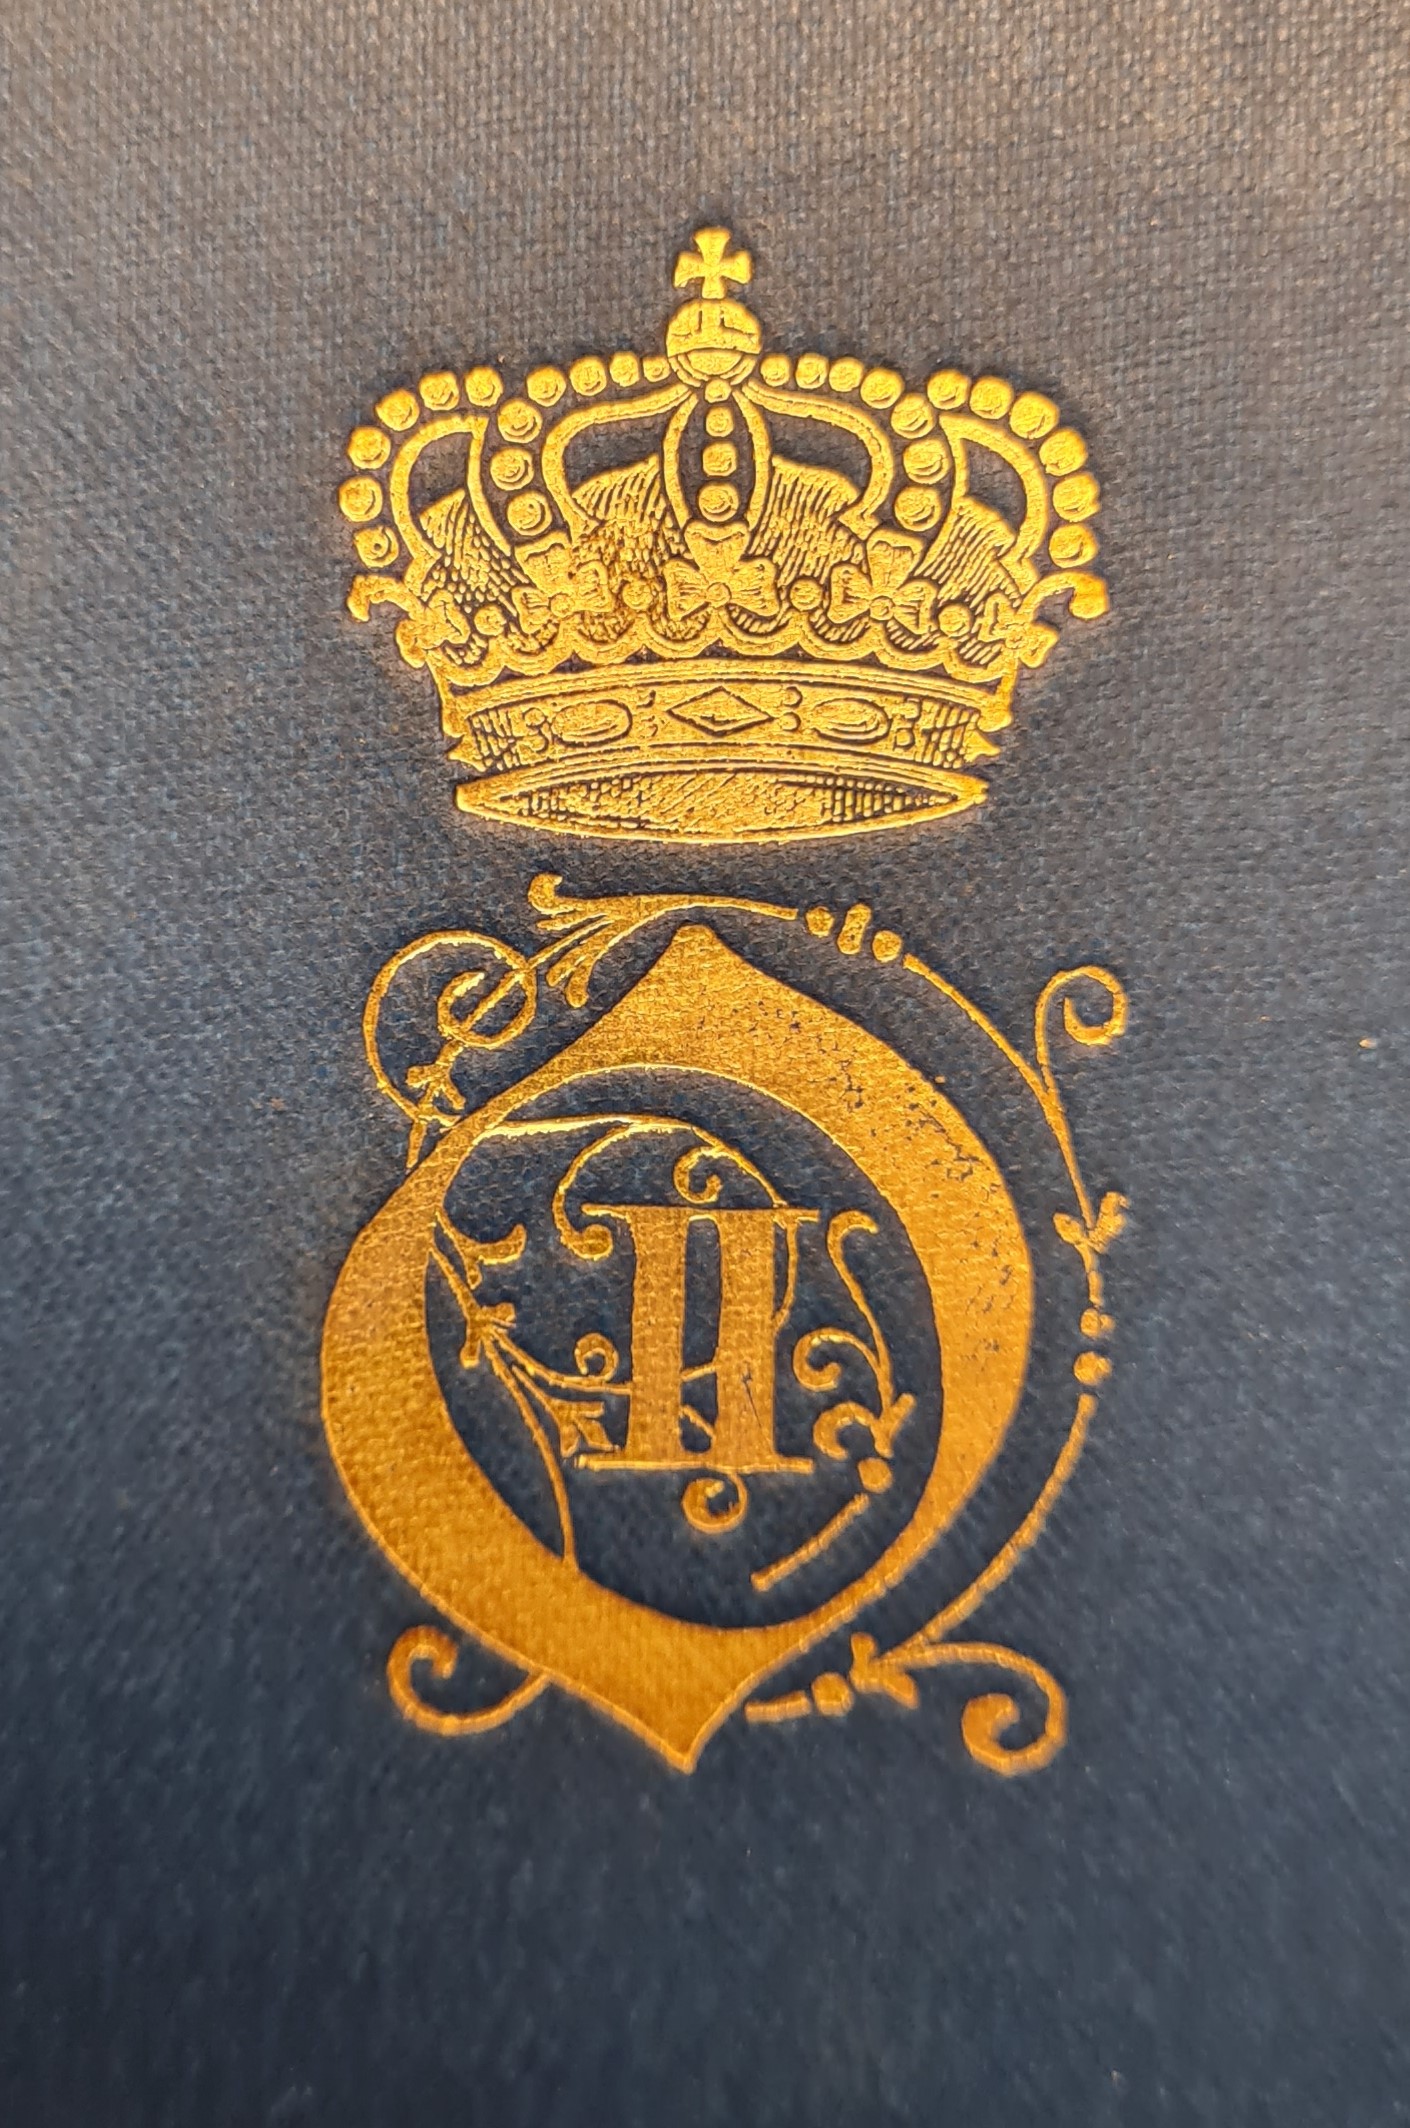 Färgfotografi av ett förgyllt monogram med kungakrona på en blå bokpärm